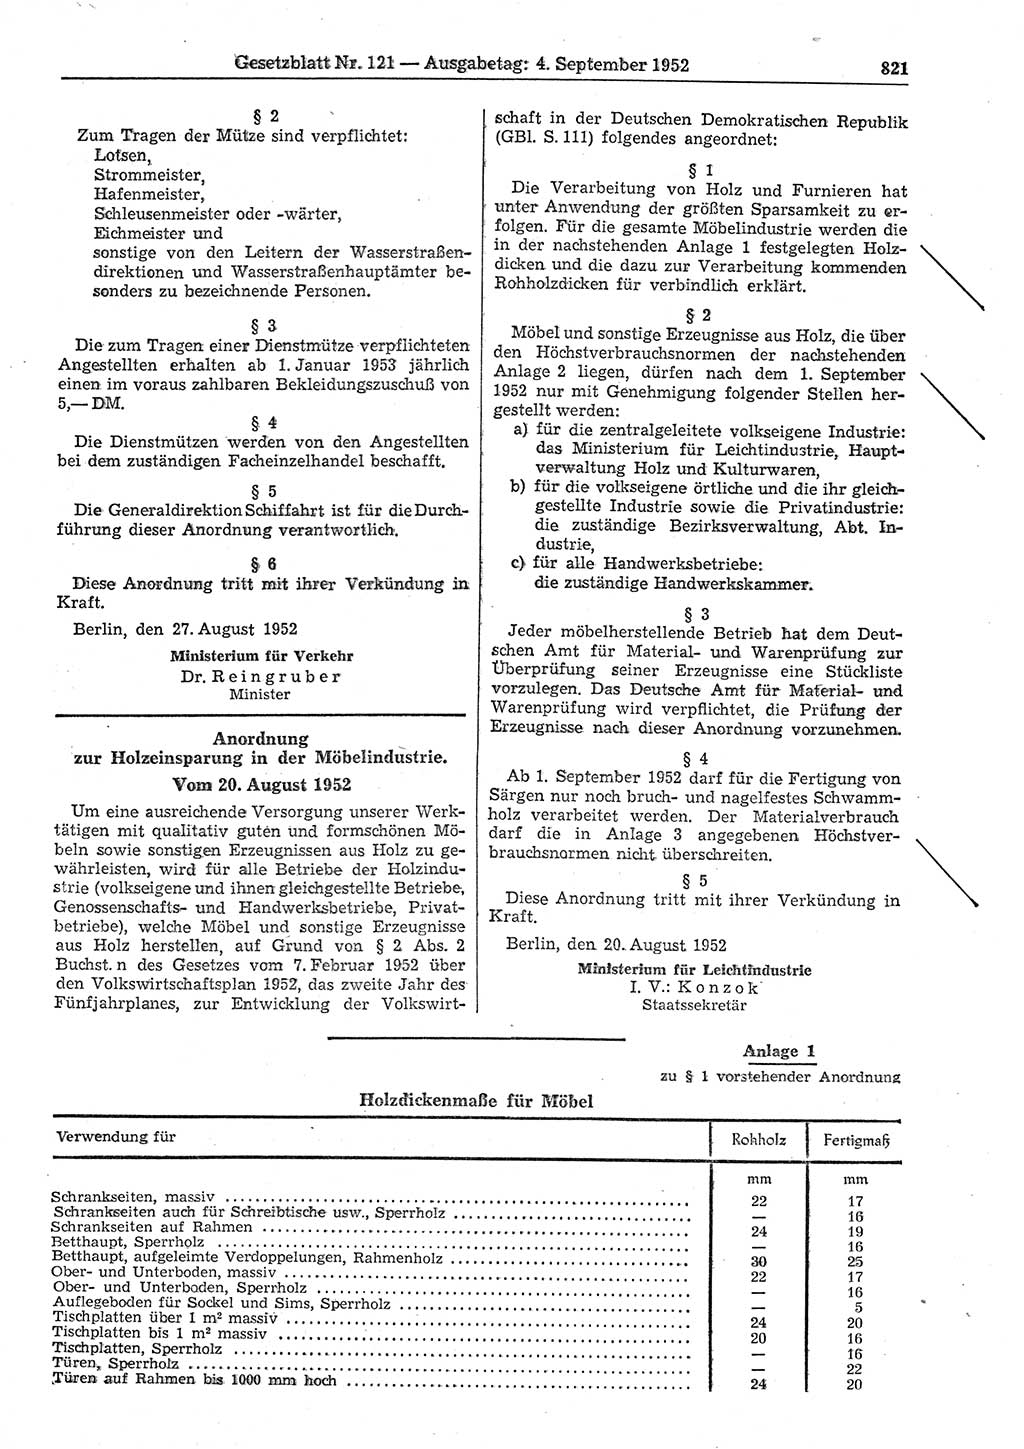 Gesetzblatt (GBl.) der Deutschen Demokratischen Republik (DDR) 1952, Seite 821 (GBl. DDR 1952, S. 821)